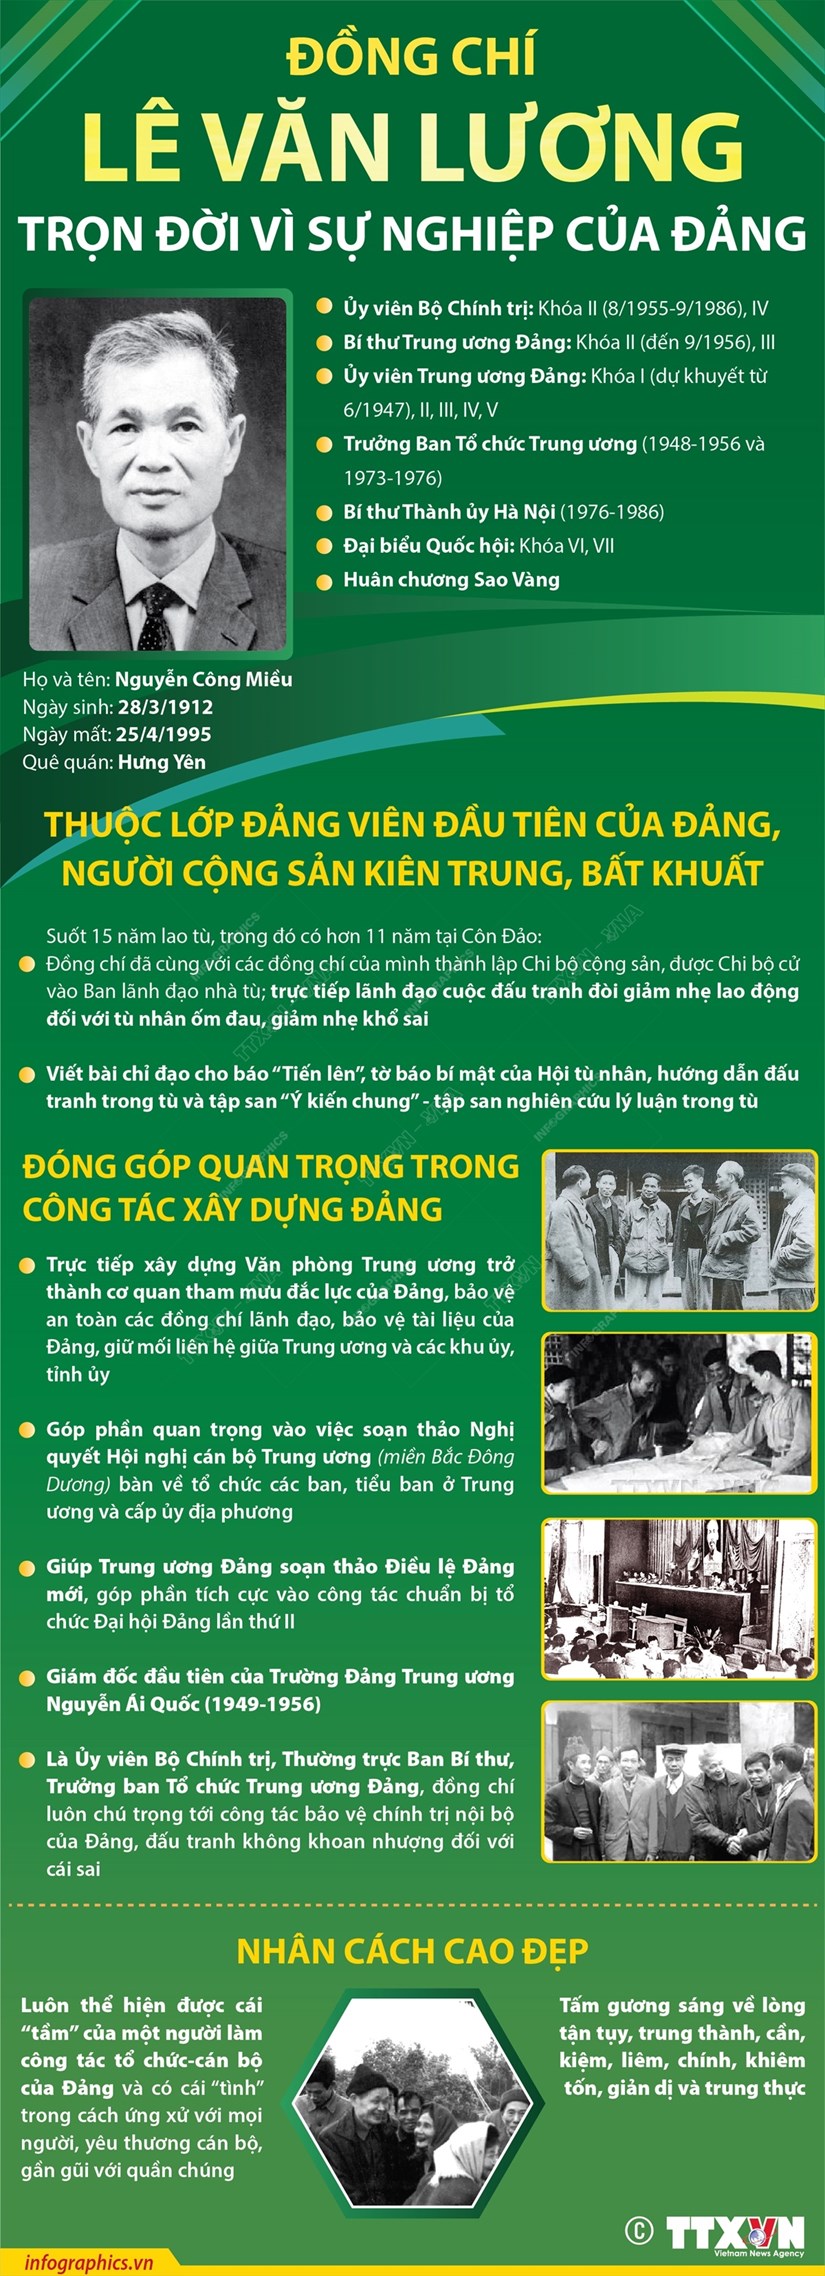 [Infographics] Đồng chí Lê Văn Lương: Trọn đời vì sự nghiệp của Đảng